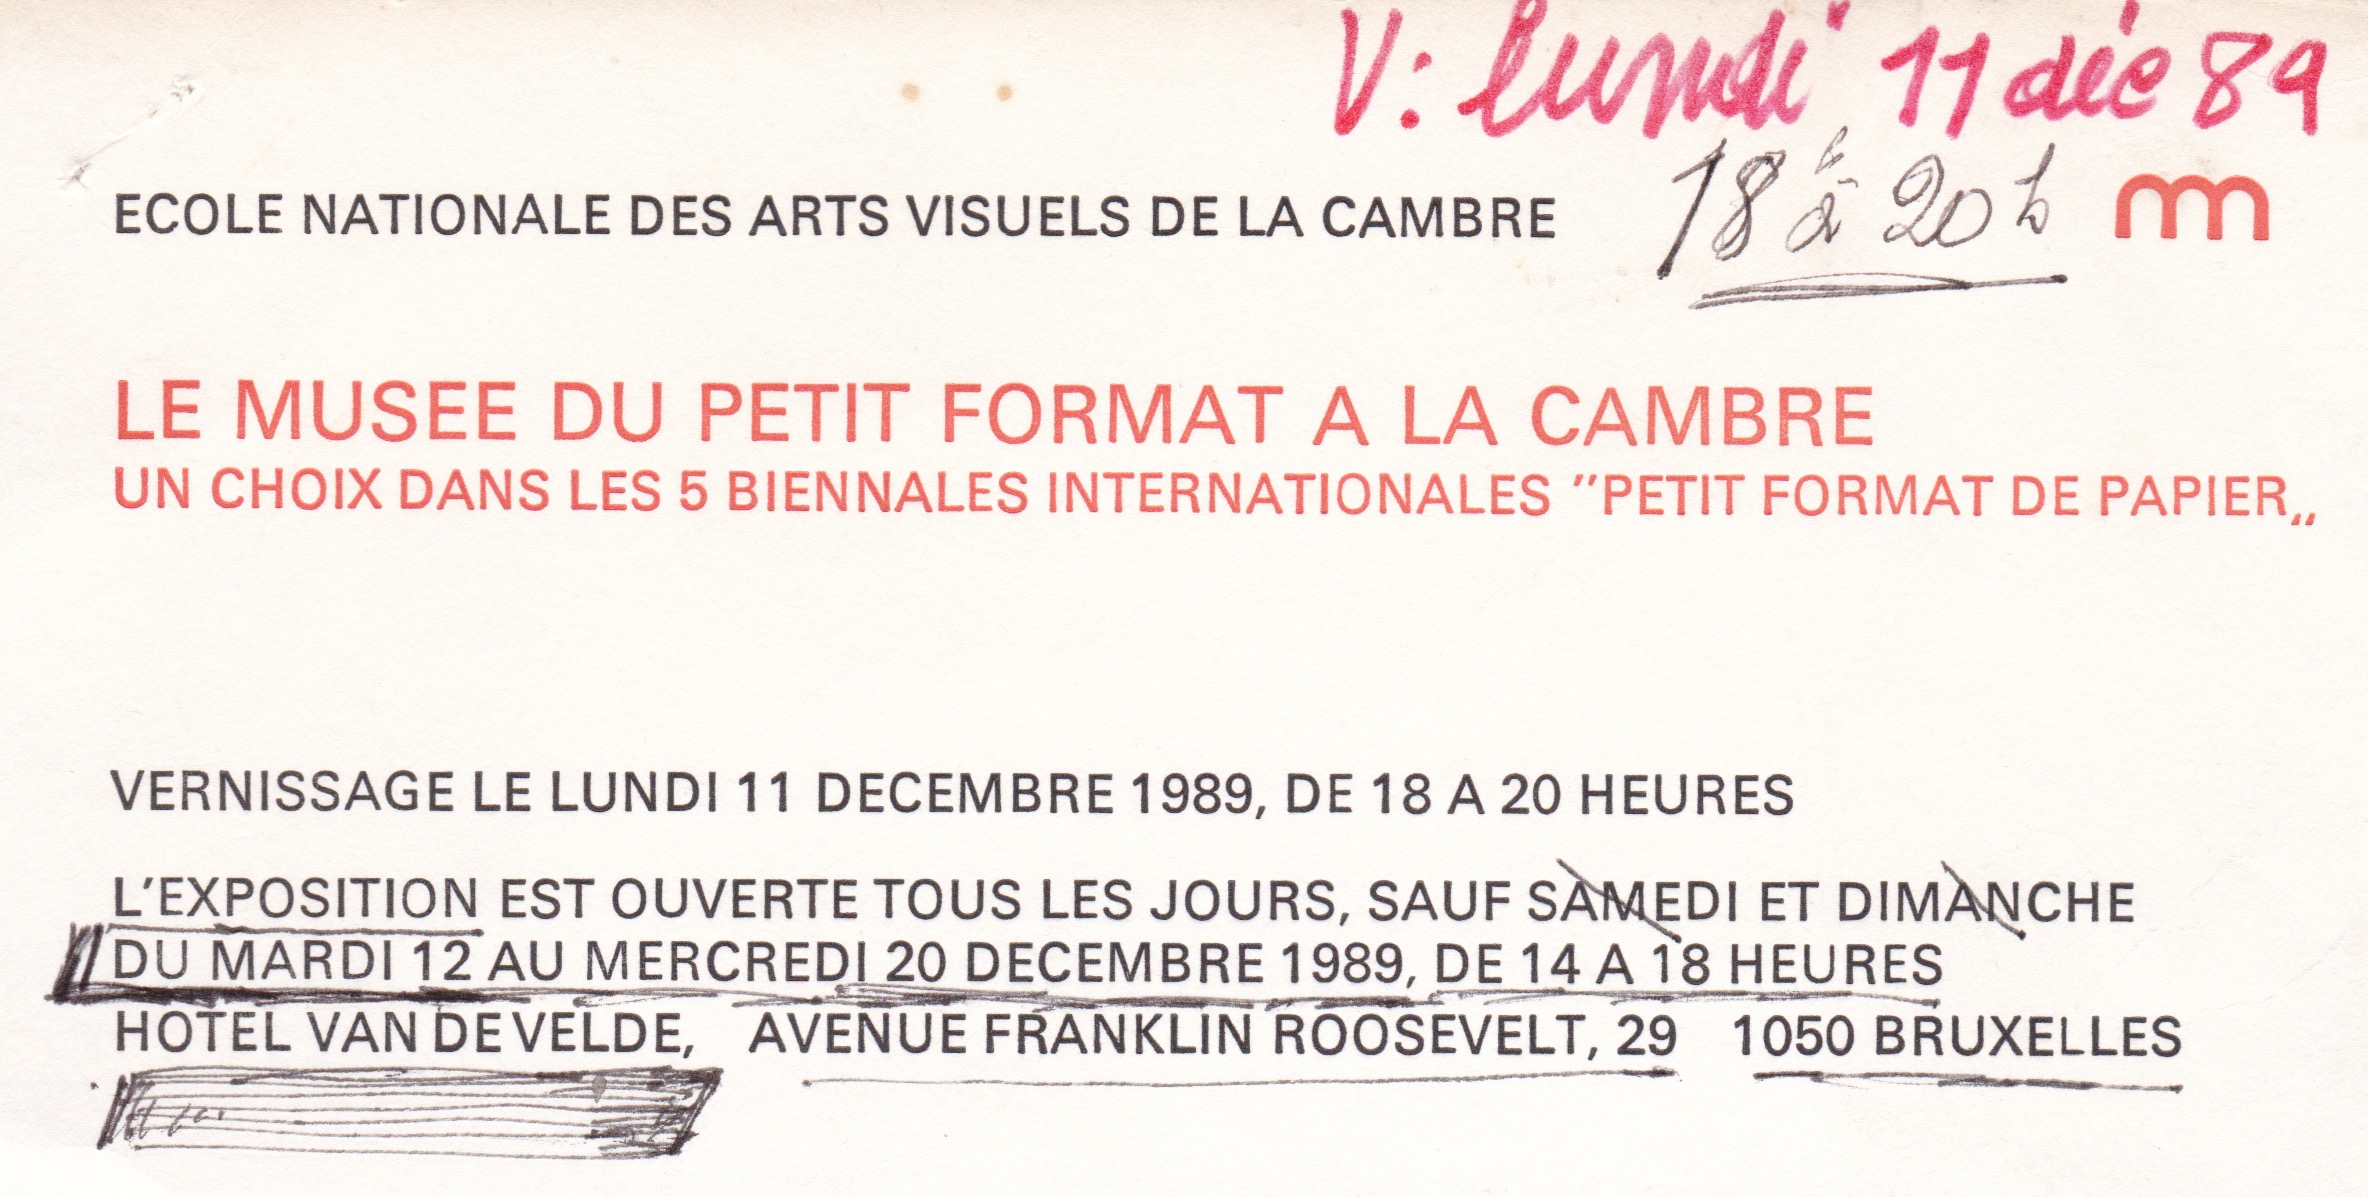 Le Musée du Petit Format à la Cambre, bruxelles, 1989